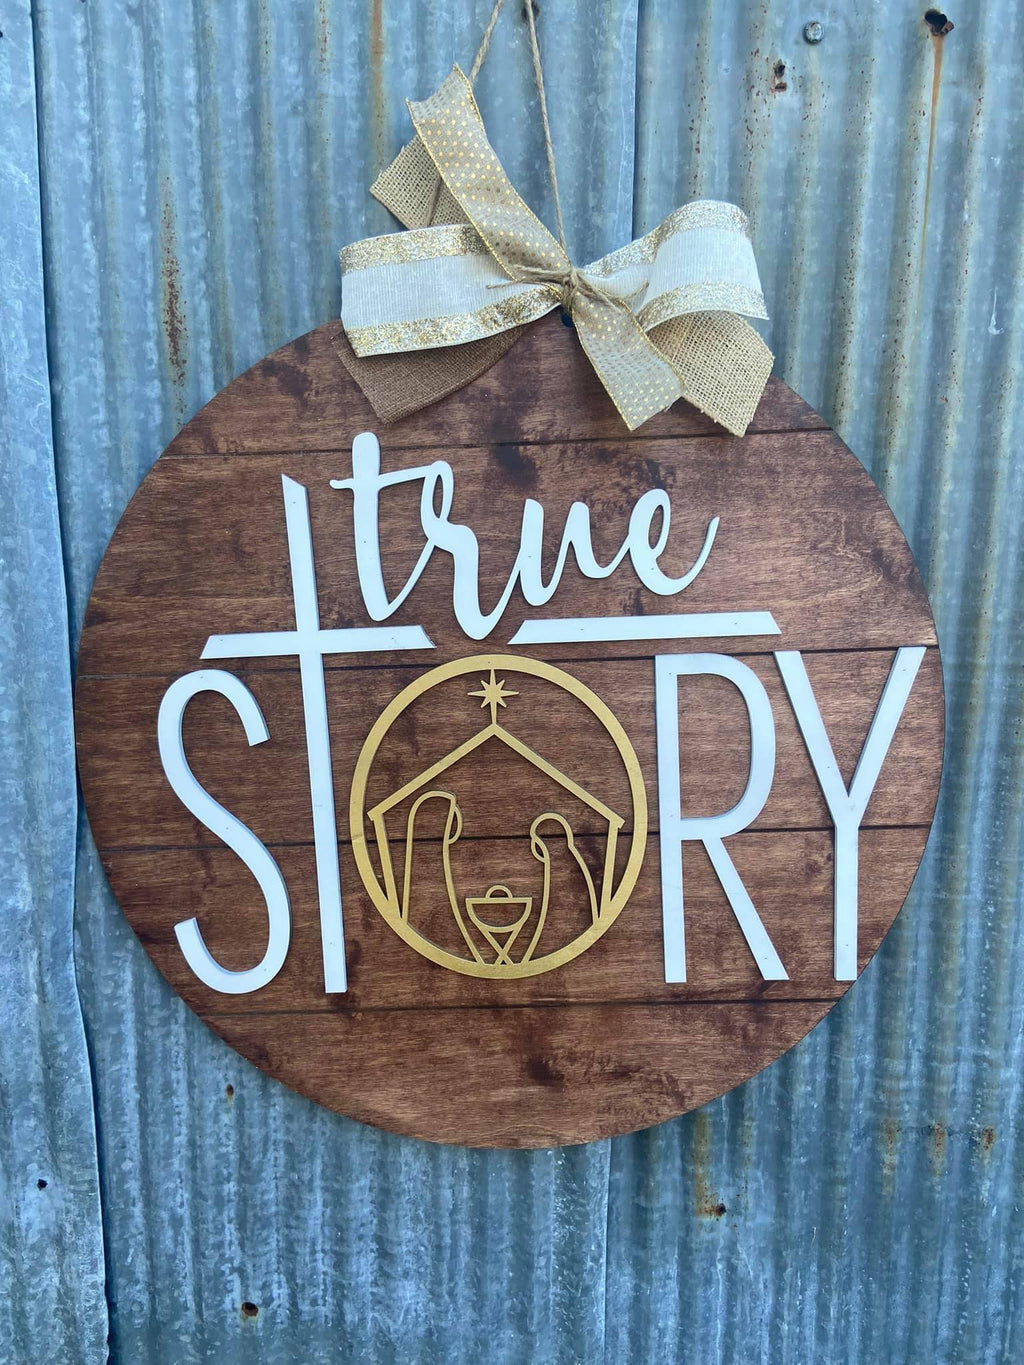 3D Doorhanger - True Story Nativity Scene